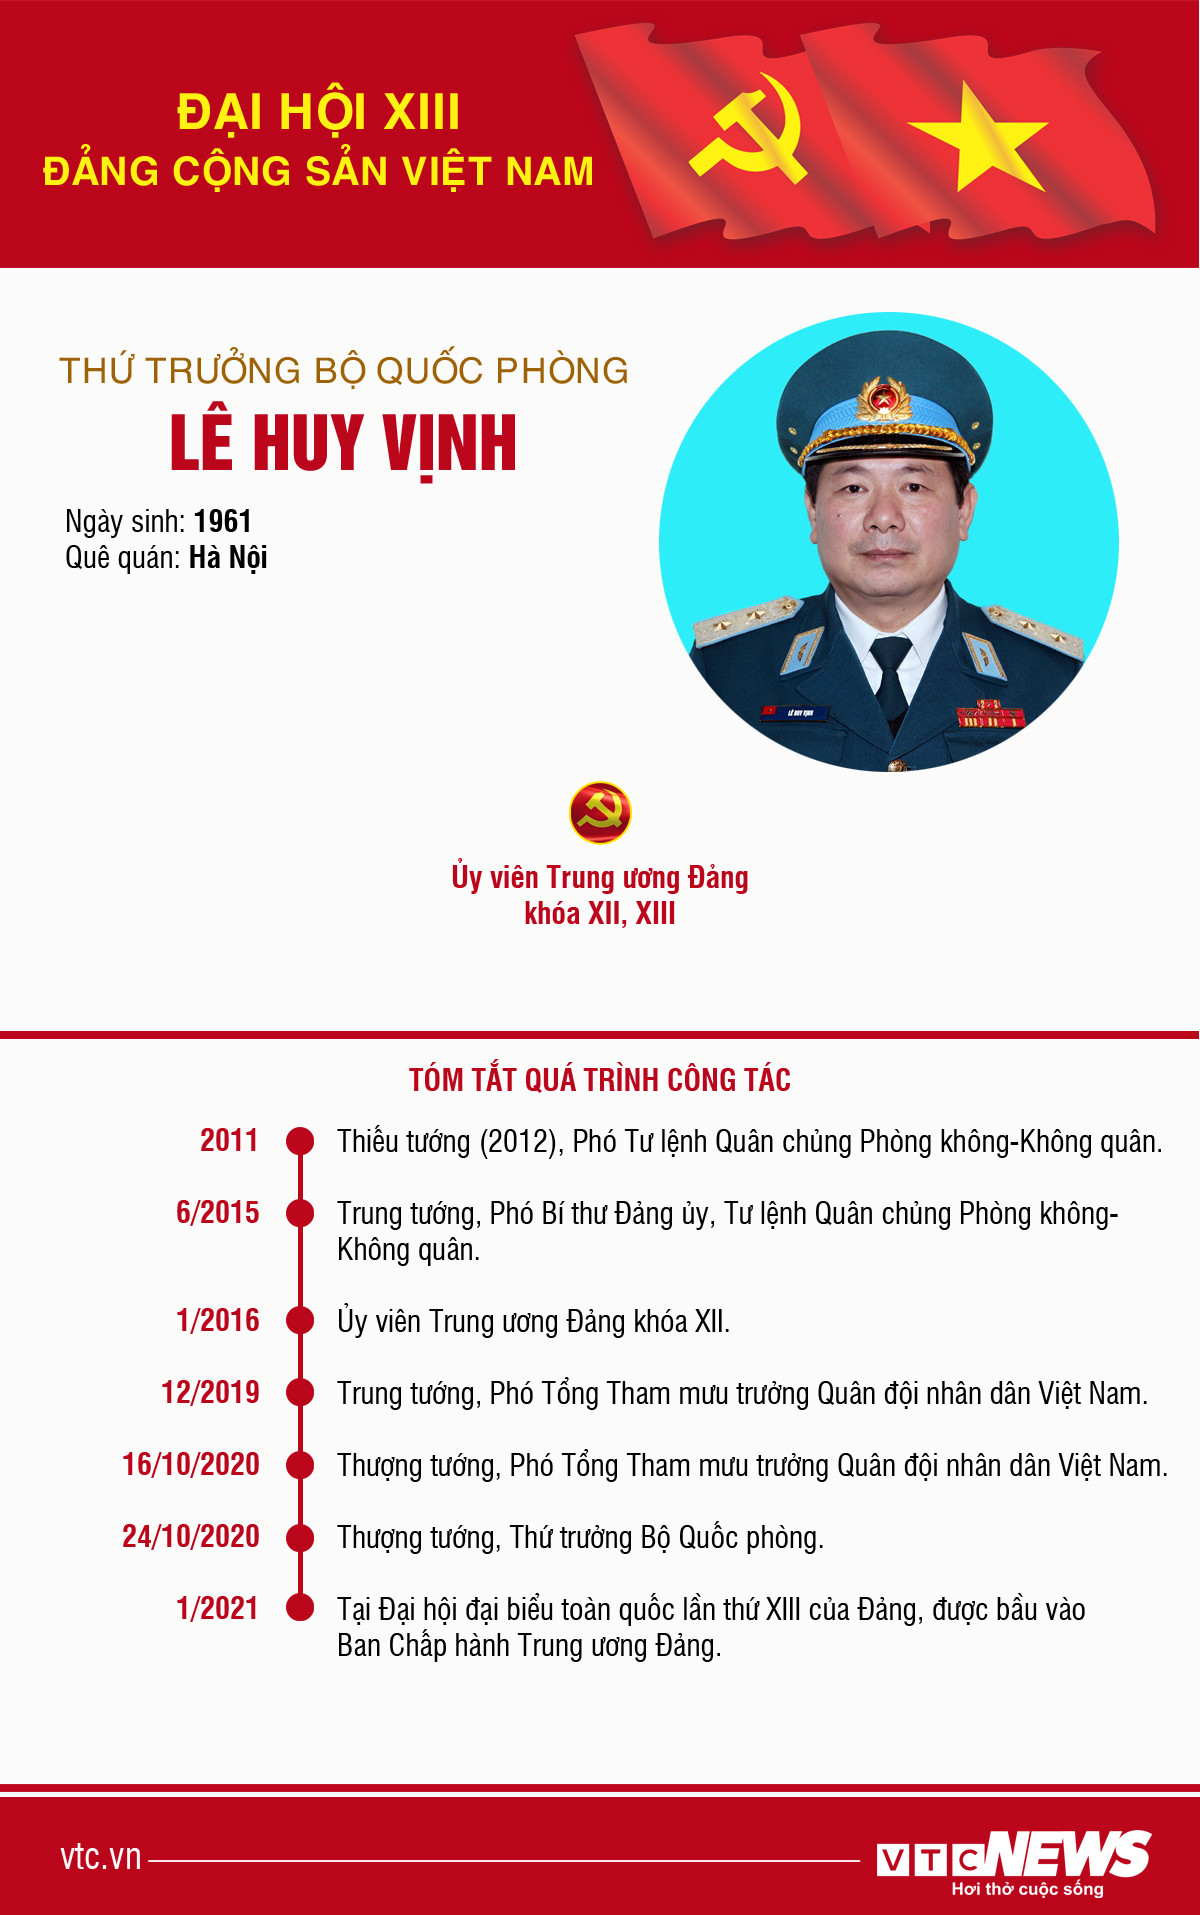 Infographic: Sự nghiệp Thứ trưởng Bộ Quốc phòng Lê Huy Vịnh - 1